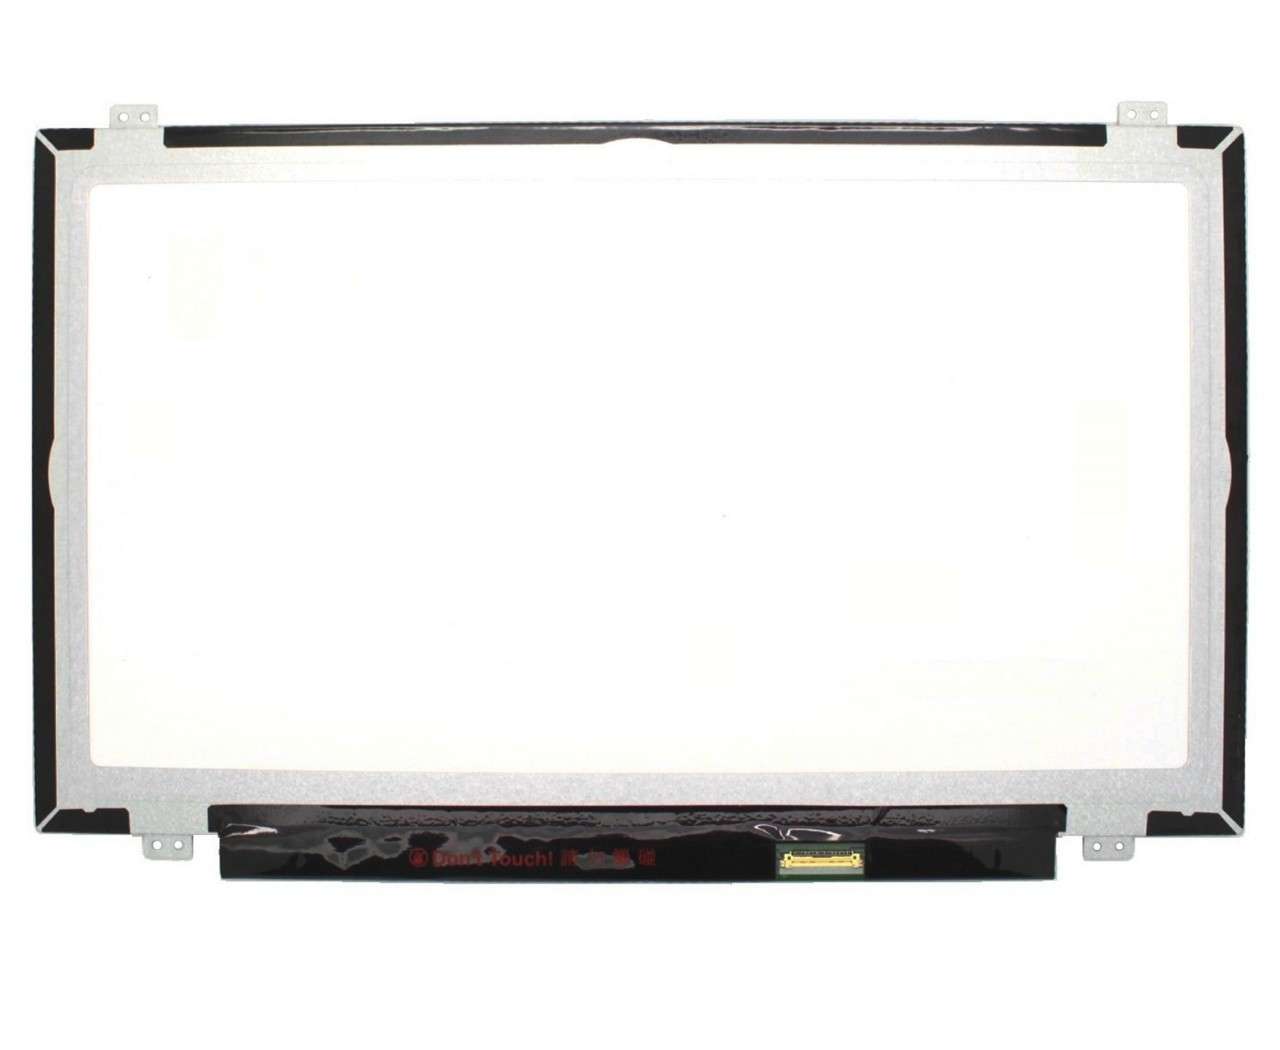 Display laptop LG LP140WF6 SP B3 Ecran 14.0 1920×1080 30 pini eDP imagine 2021 LG